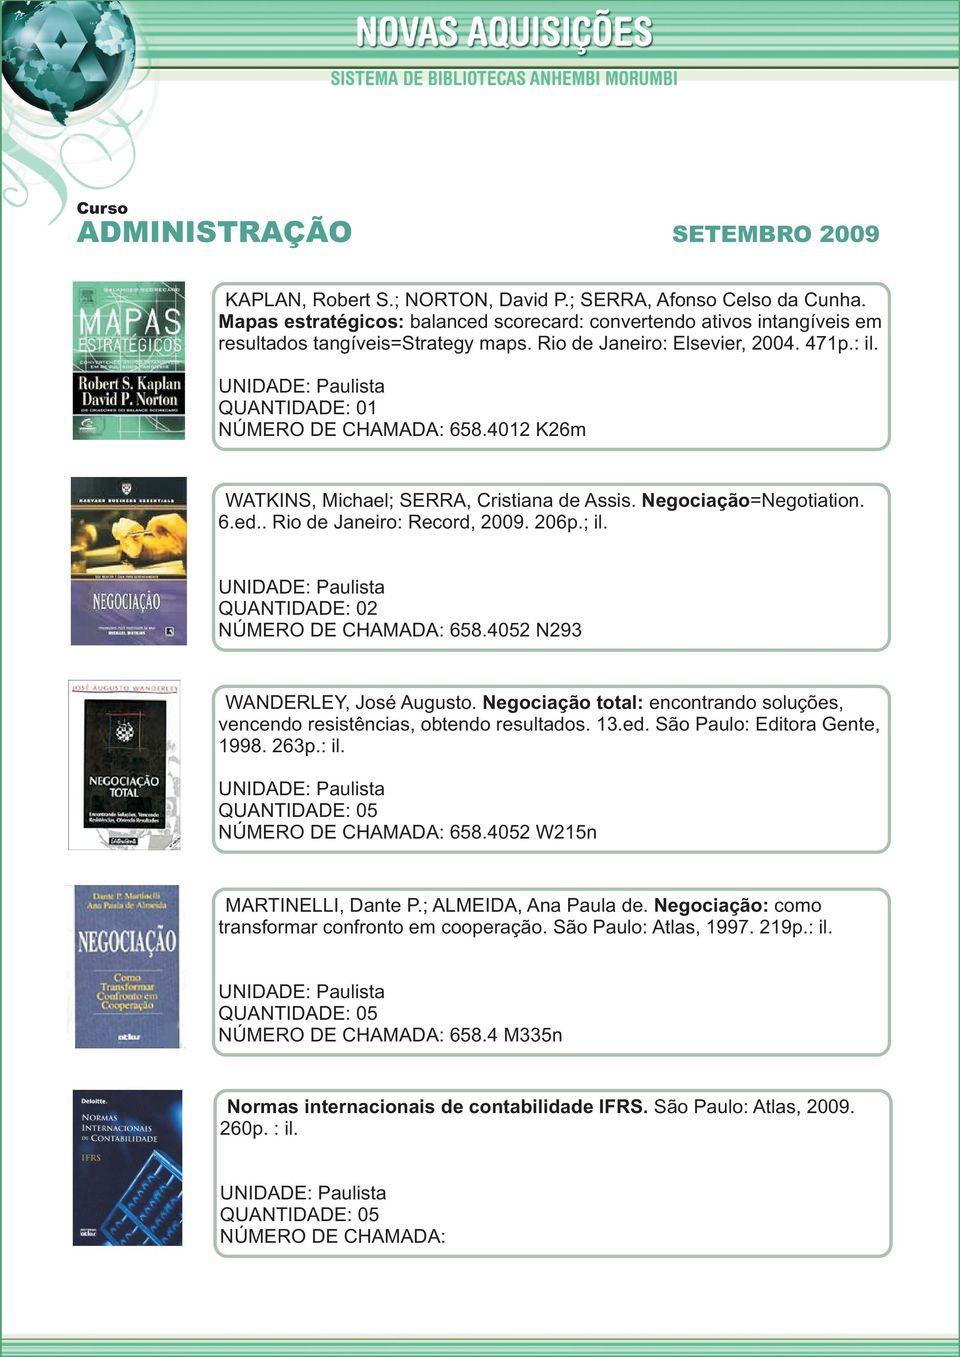 Negociação total: encontrando soluções, vencendo resistências, obtendo resultados. 13.ed. São Paulo: Editora Gente, 1998. 263p.: il. 658.4052 W215n MARTINELLI, Dante P.